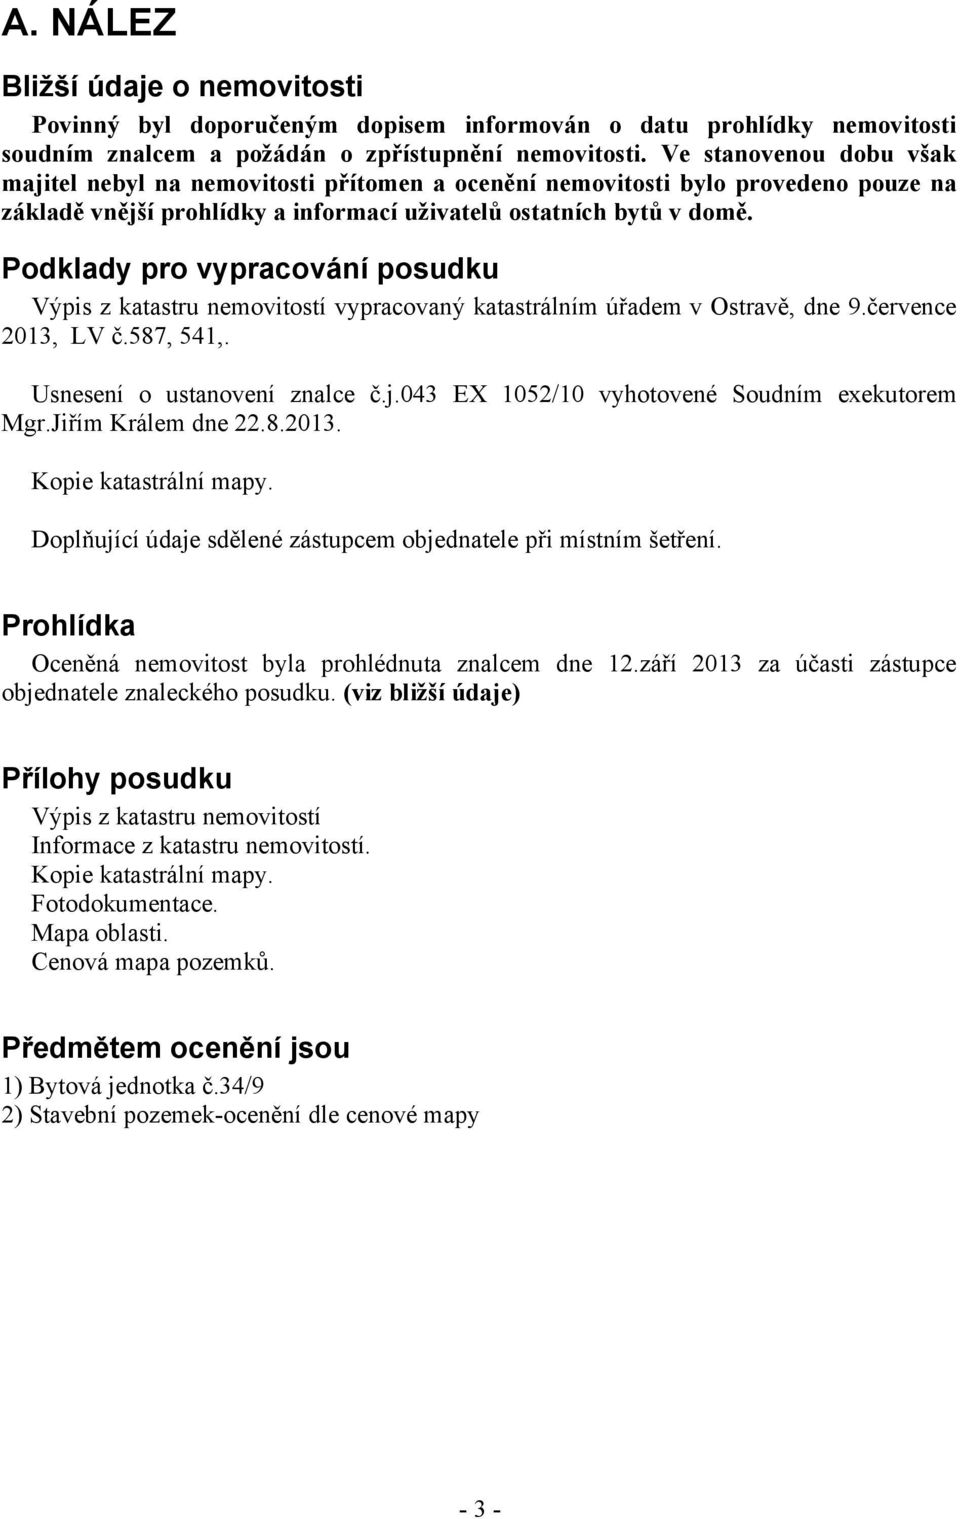 Podklady pro vypracování posudku Výpis z katastru nemovitostí vypracovaný katastrálním úřadem v Ostravě, dne 9.července 2013, LV č.587, 541,. Usnesení o ustanovení znalce č.j.